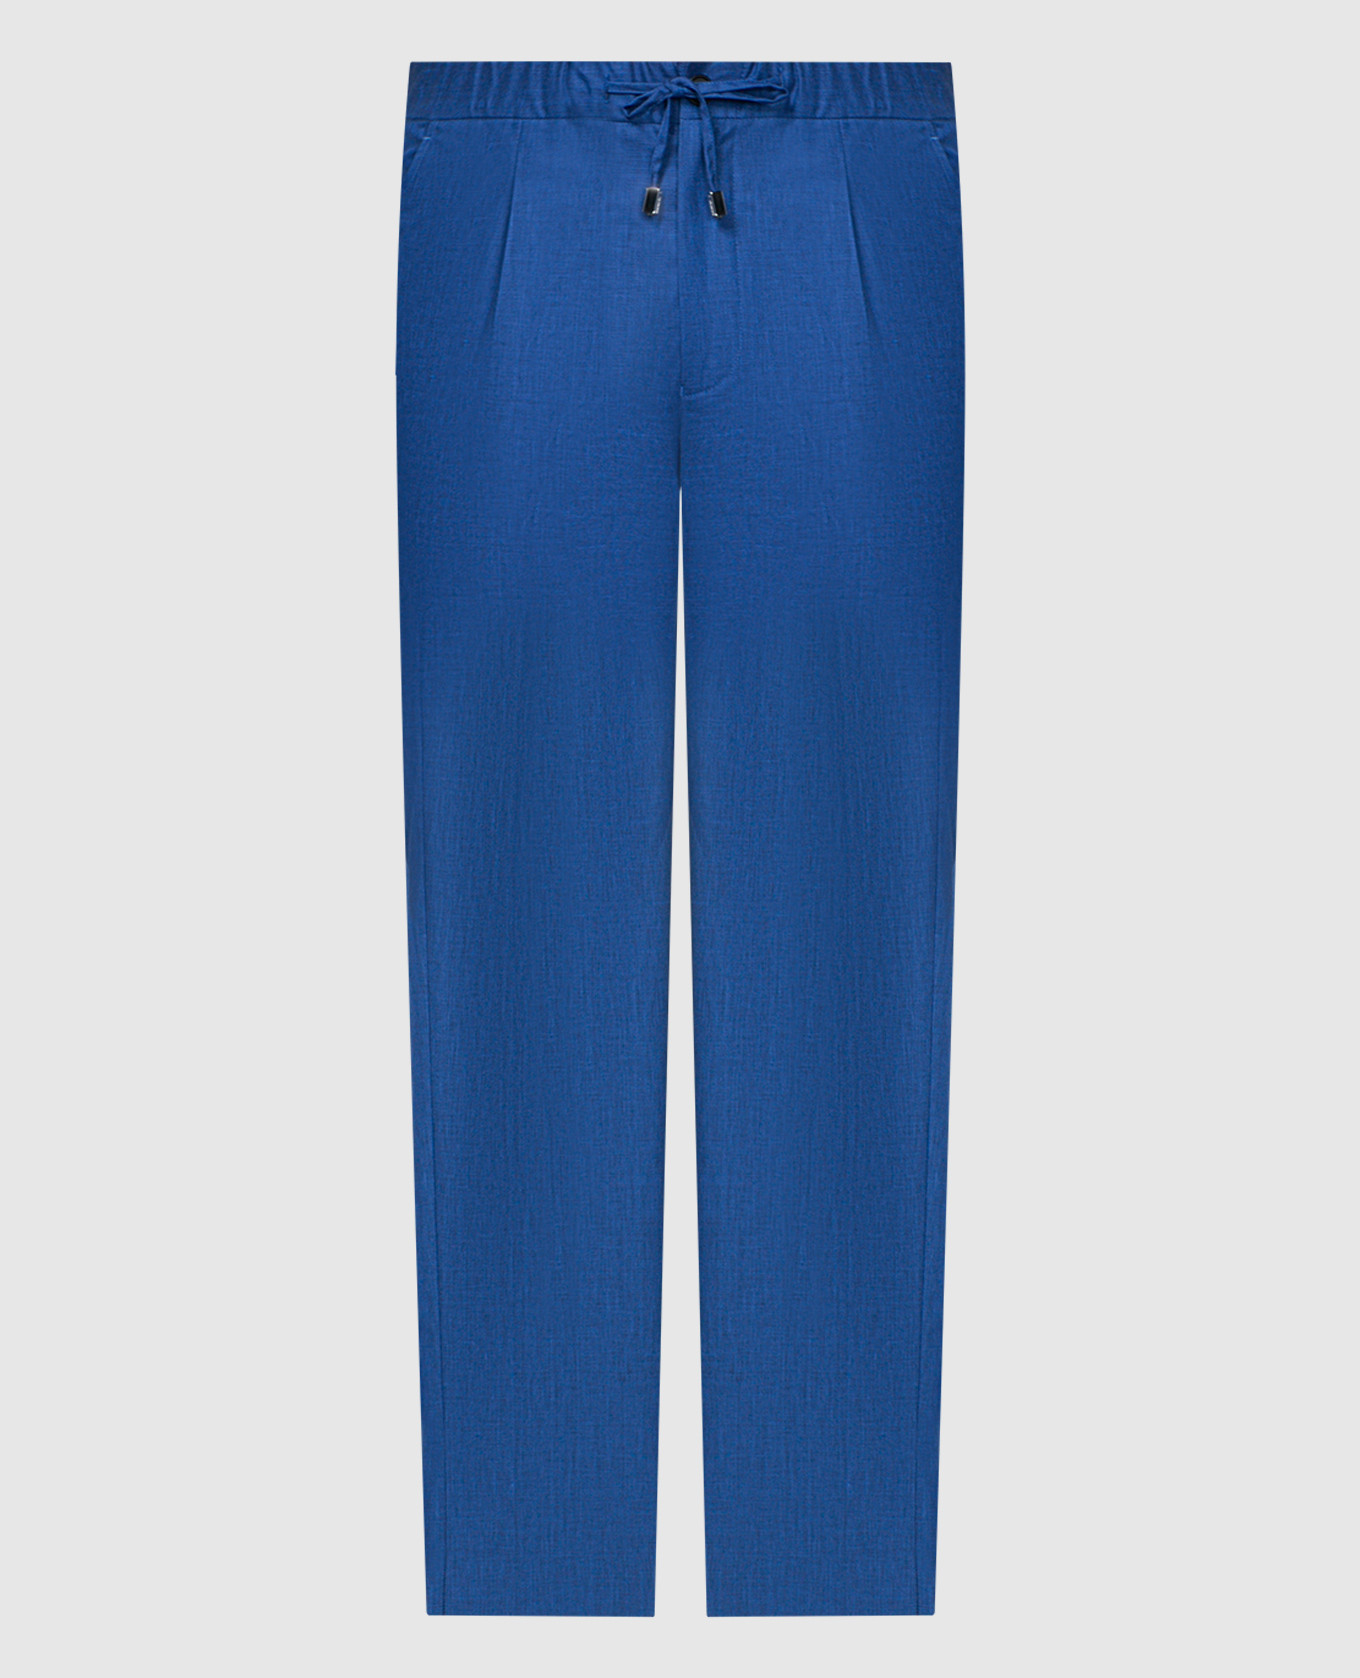 Синие брюки из льна, шерсти и шелка.